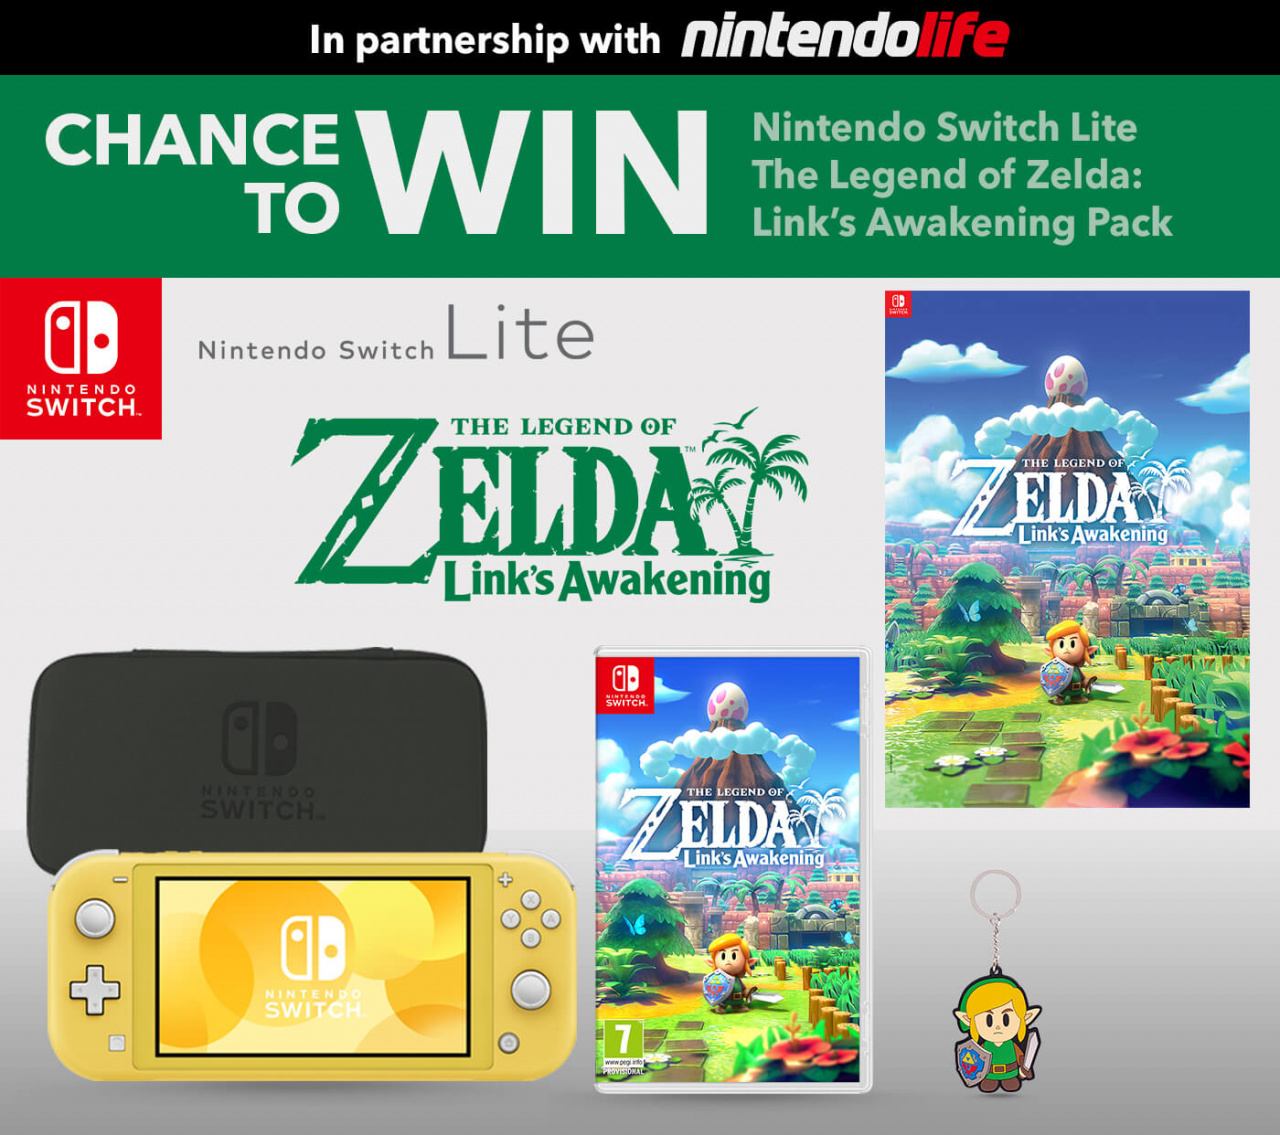  Legend of Zelda Link's Awakening - Nintendo Switch